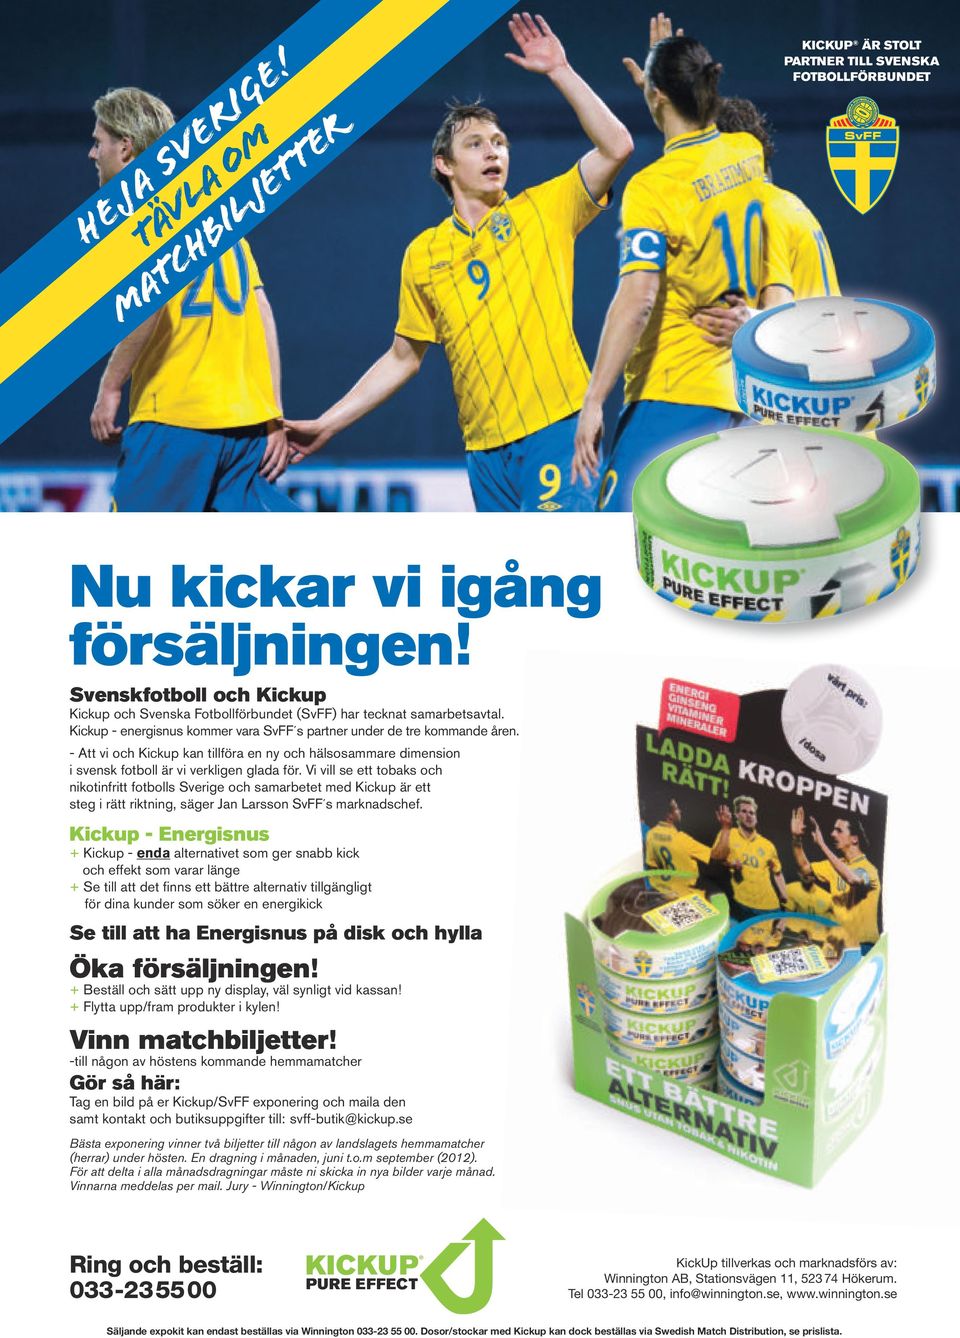 - Att vi och Kickup kan tillföra en ny och hälsosammare dimension i svensk fotboll är vi verkligen glada för.